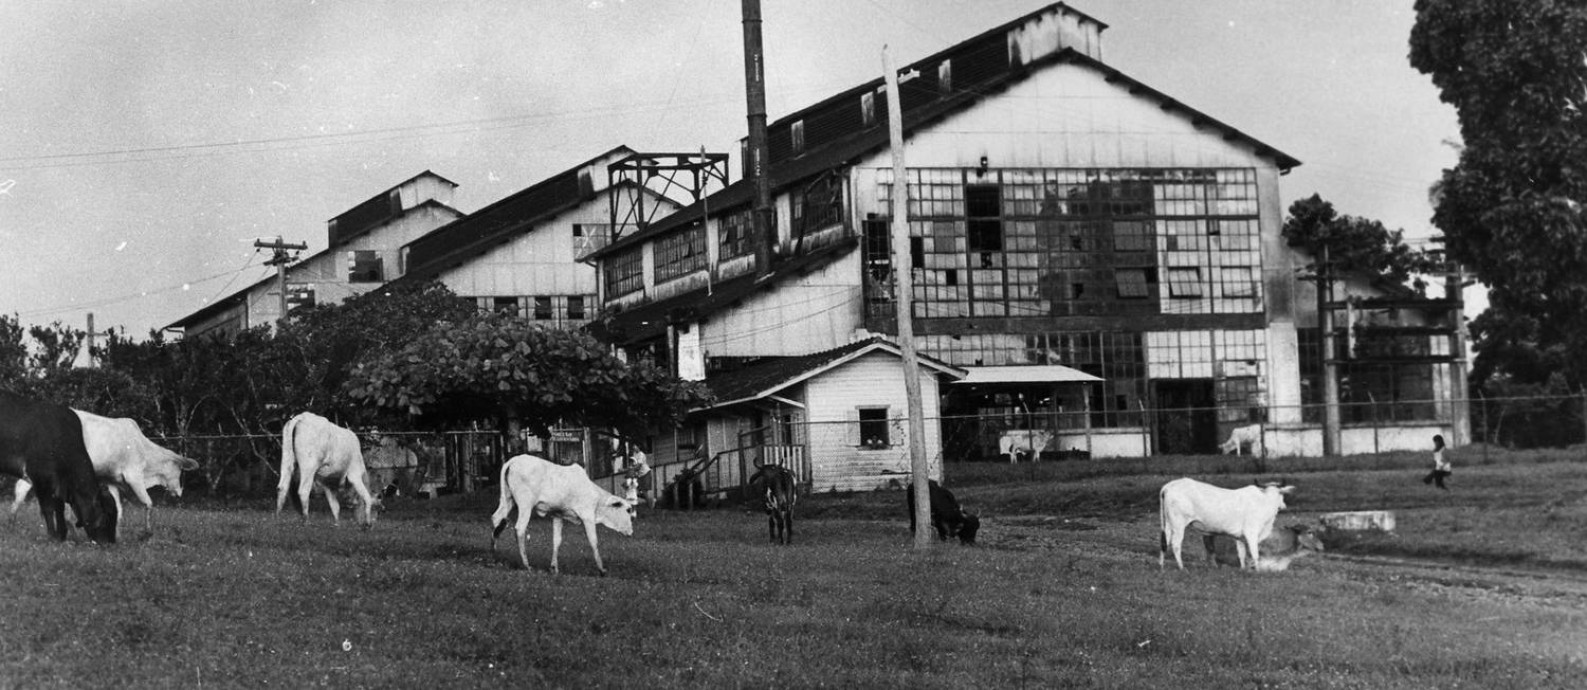 Fordlândia: fábrica construída em plena Amazônia nos anos 1920 vira série  de Werner Herzog - Jornal O Globo